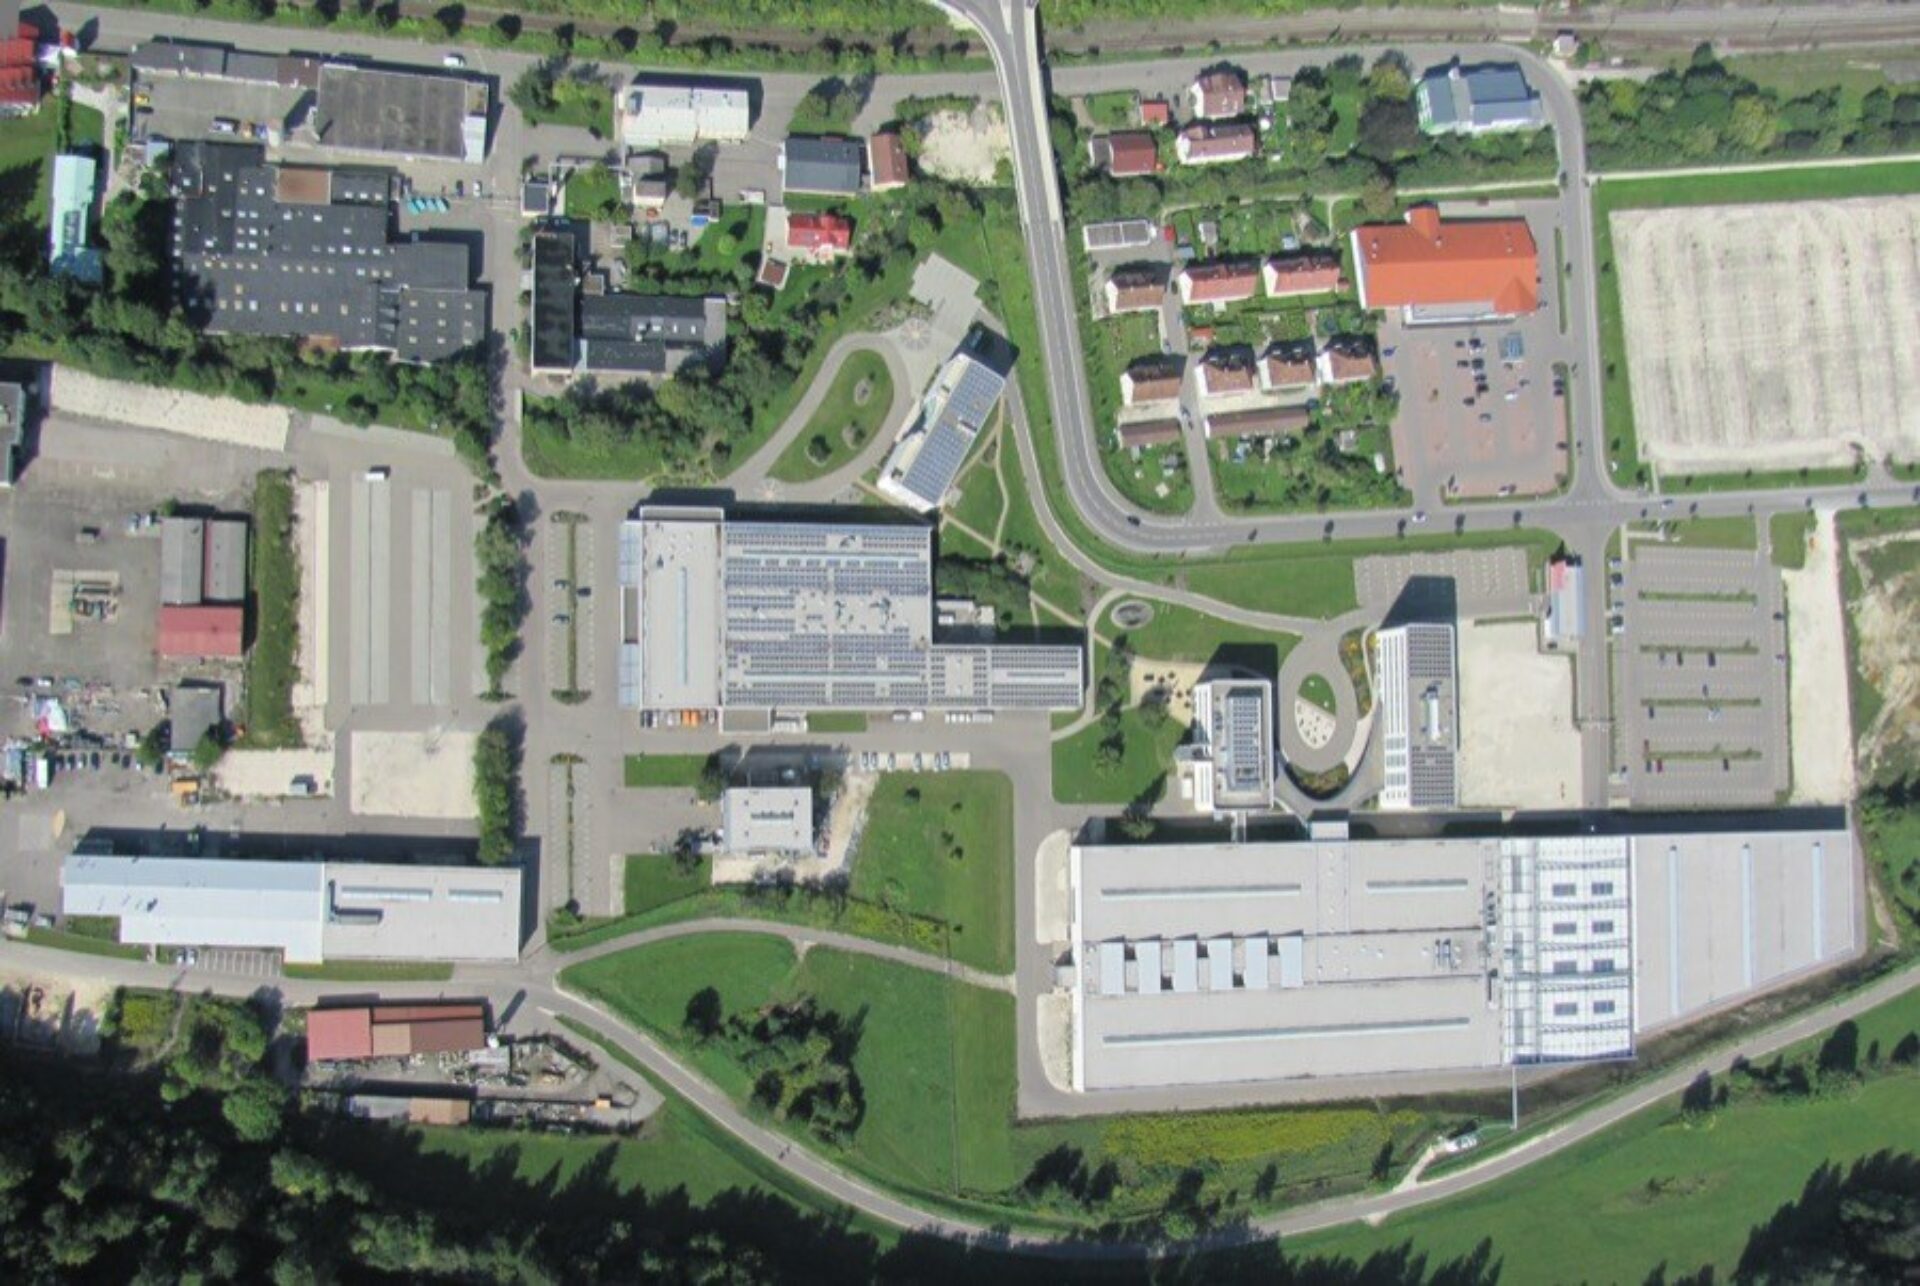 Centrotherm Fabrikerweiterung – Büro- und Produktionskomplex PV-Industrie1141